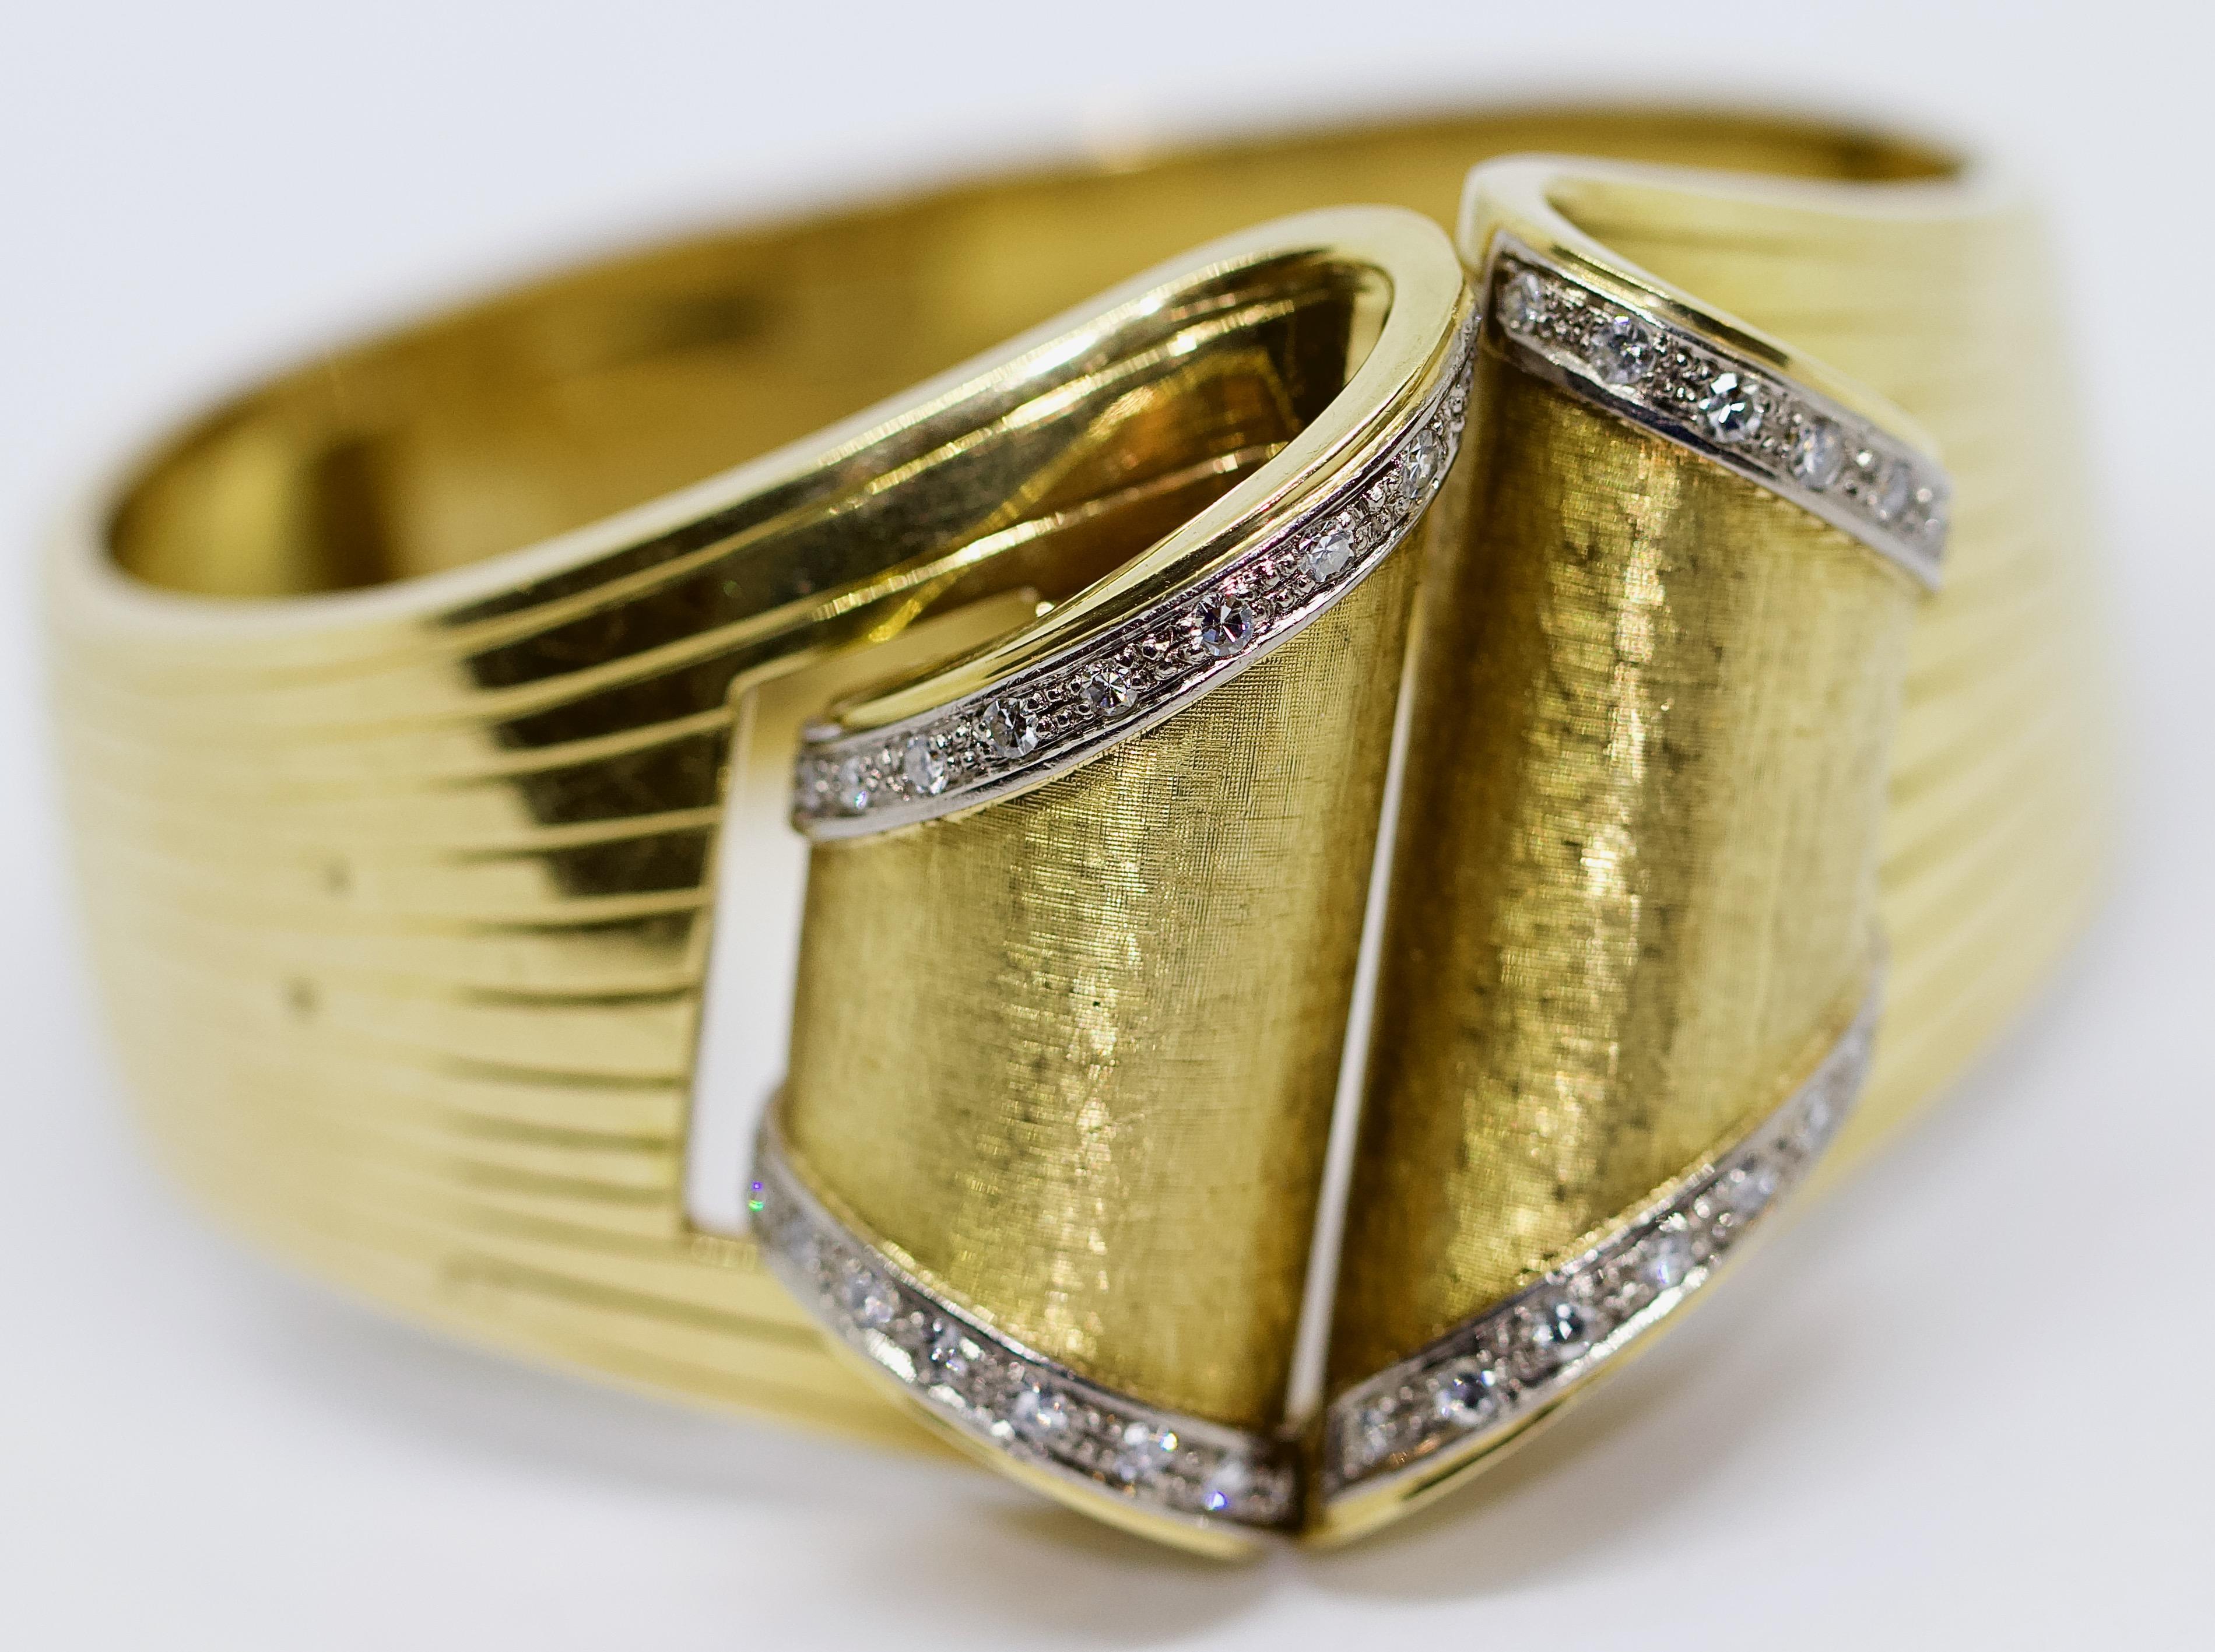 Massiv Damen Diamant Gold (14K)  Armreif.


Armreif ist gepunzt.

Mit Echtheitszertifikat.